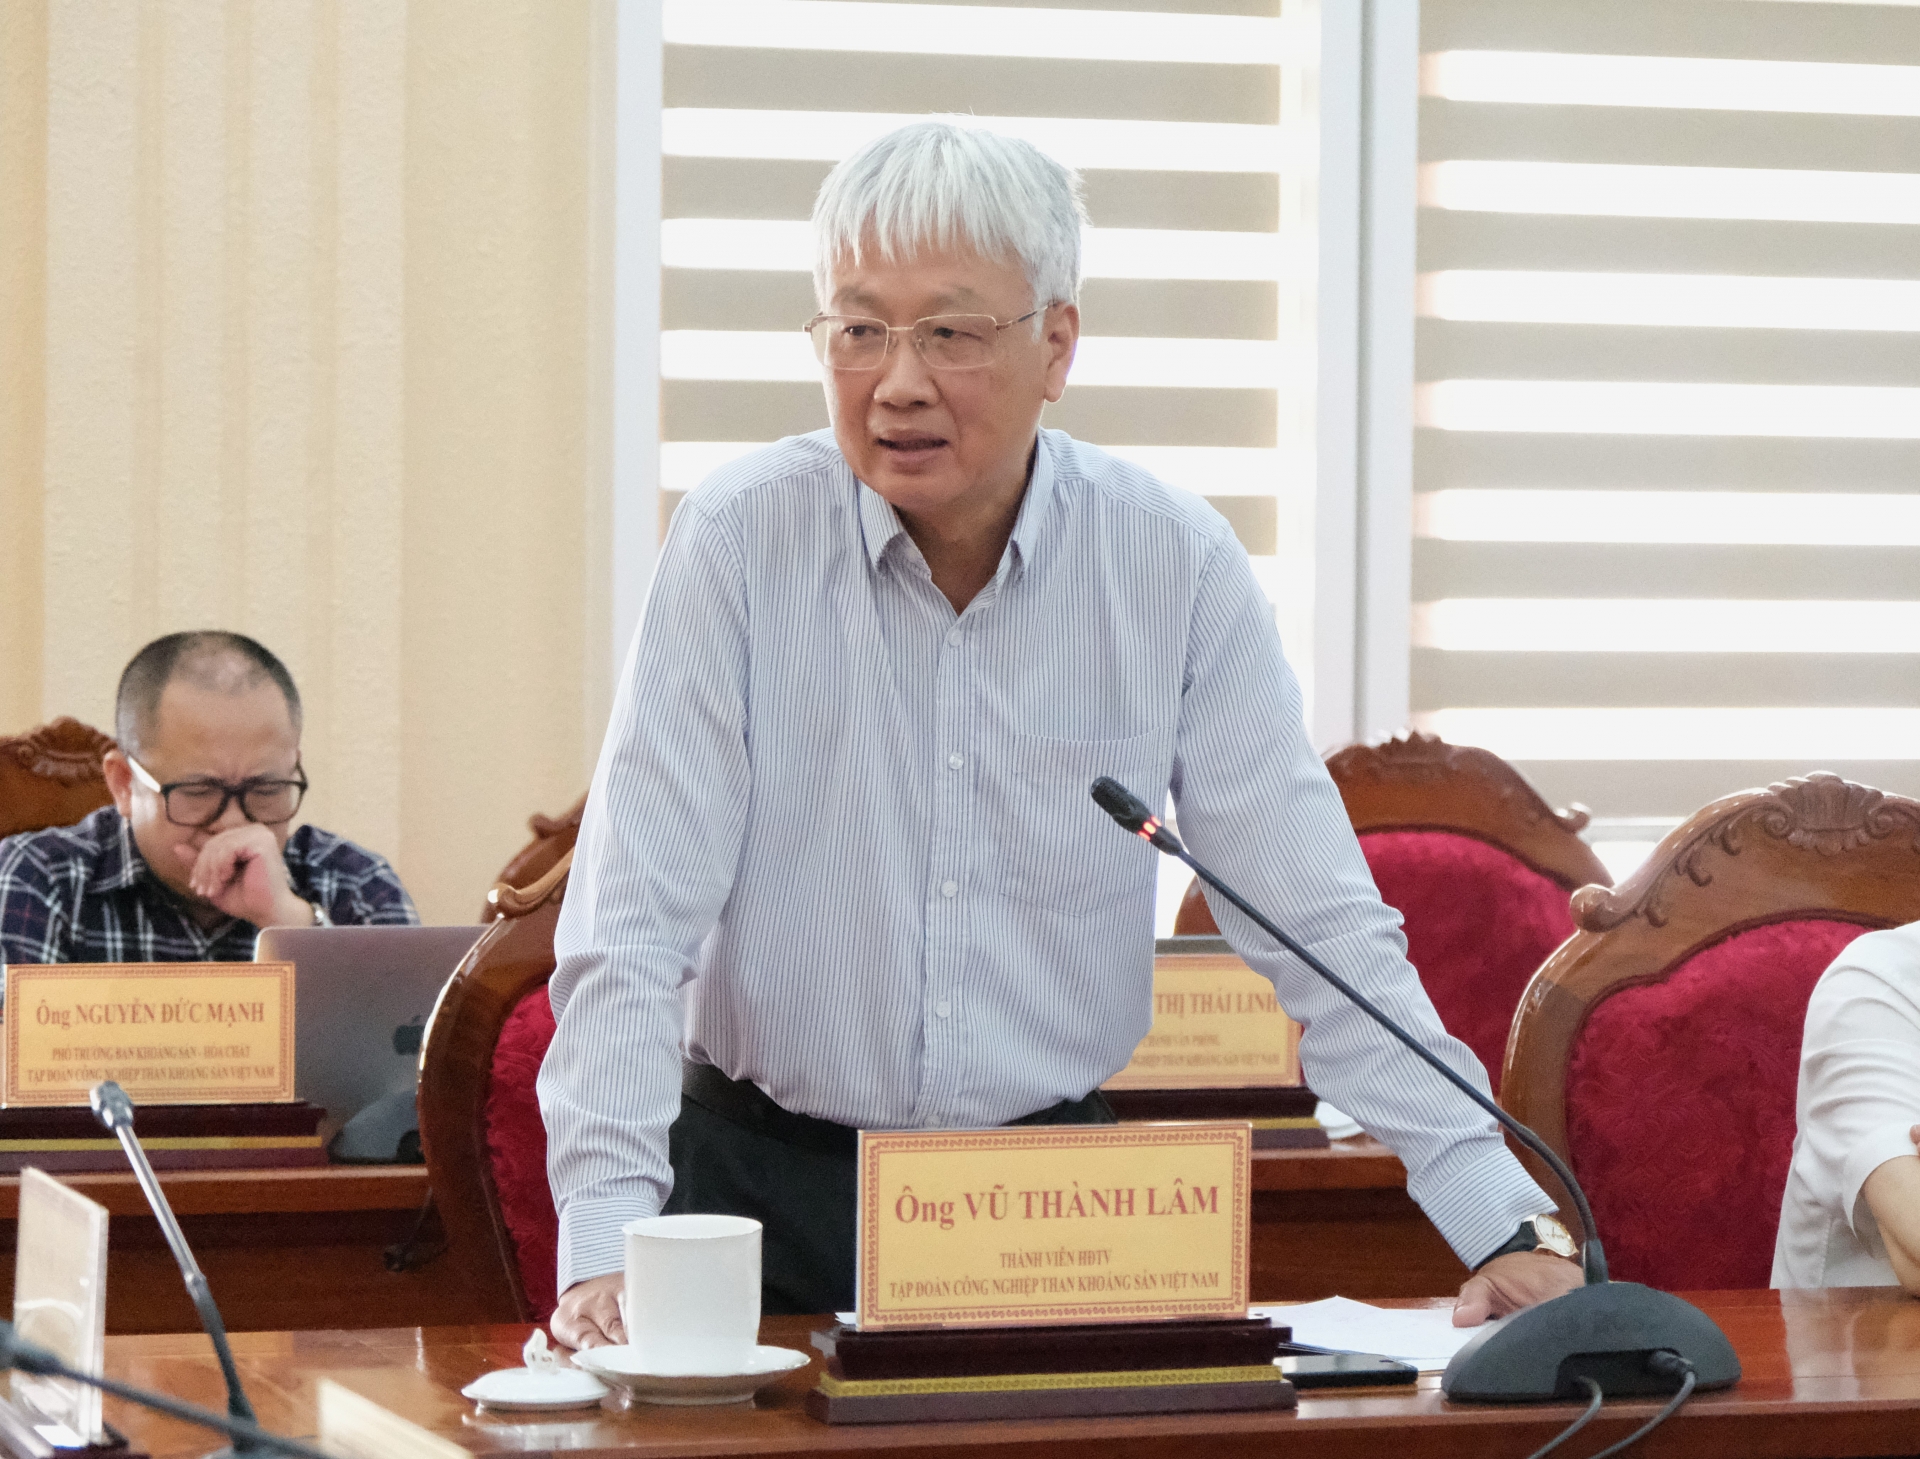 Đồng chí Vũ Thành Lâm - Thành viên Hội đồng thành viên TKV nêu ý kiến tại buổi làm việc